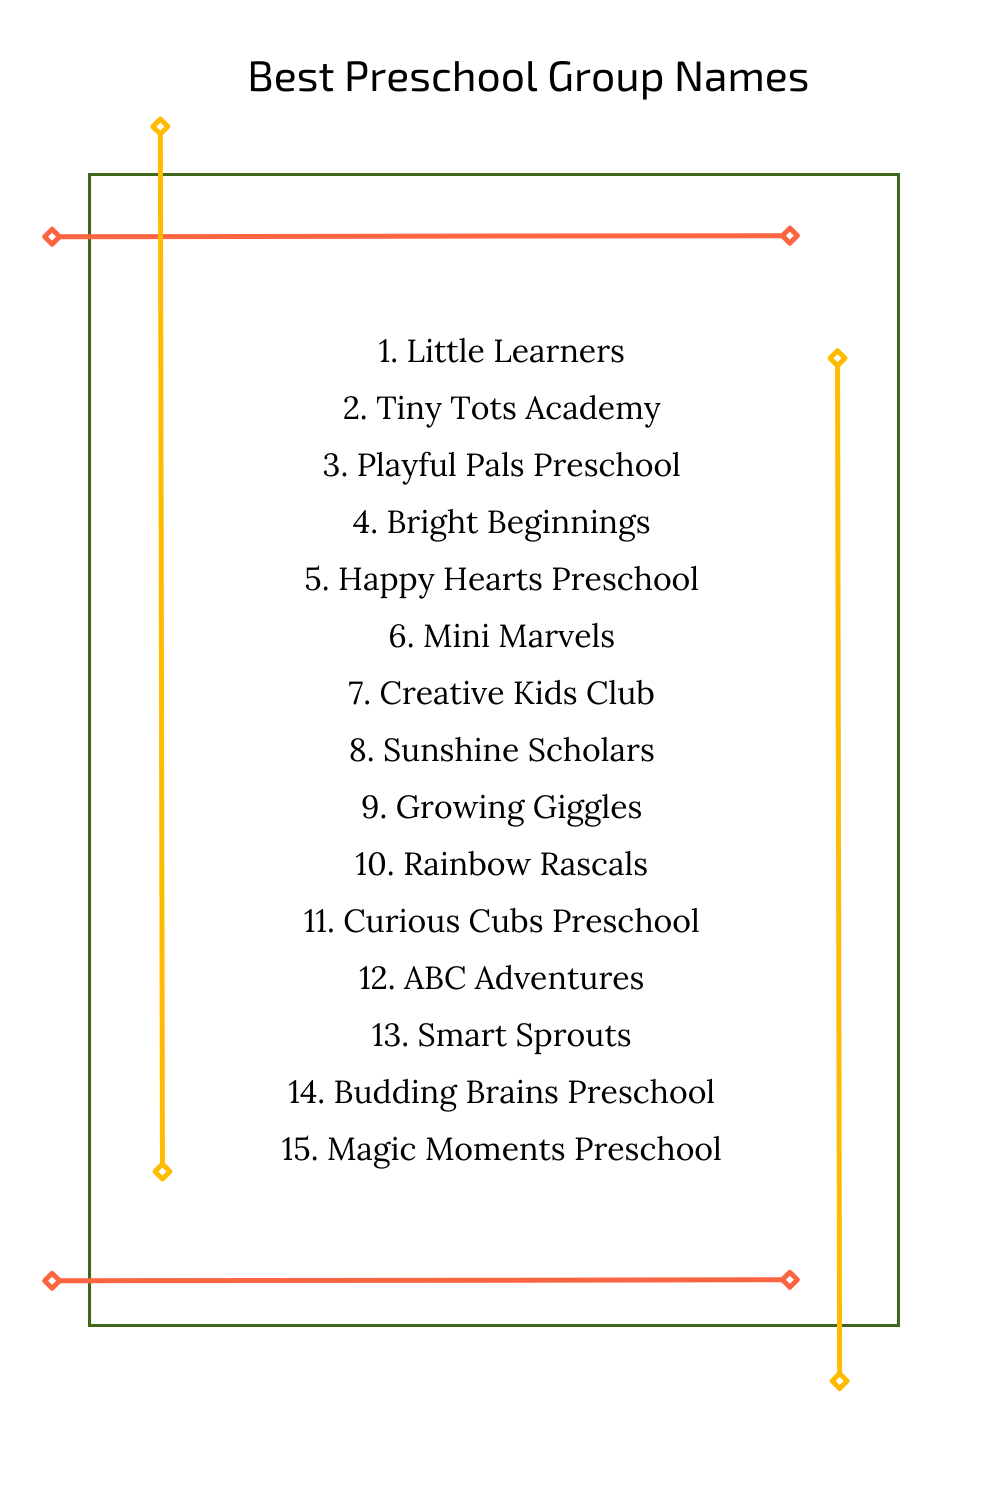 Best Preschool Group Names